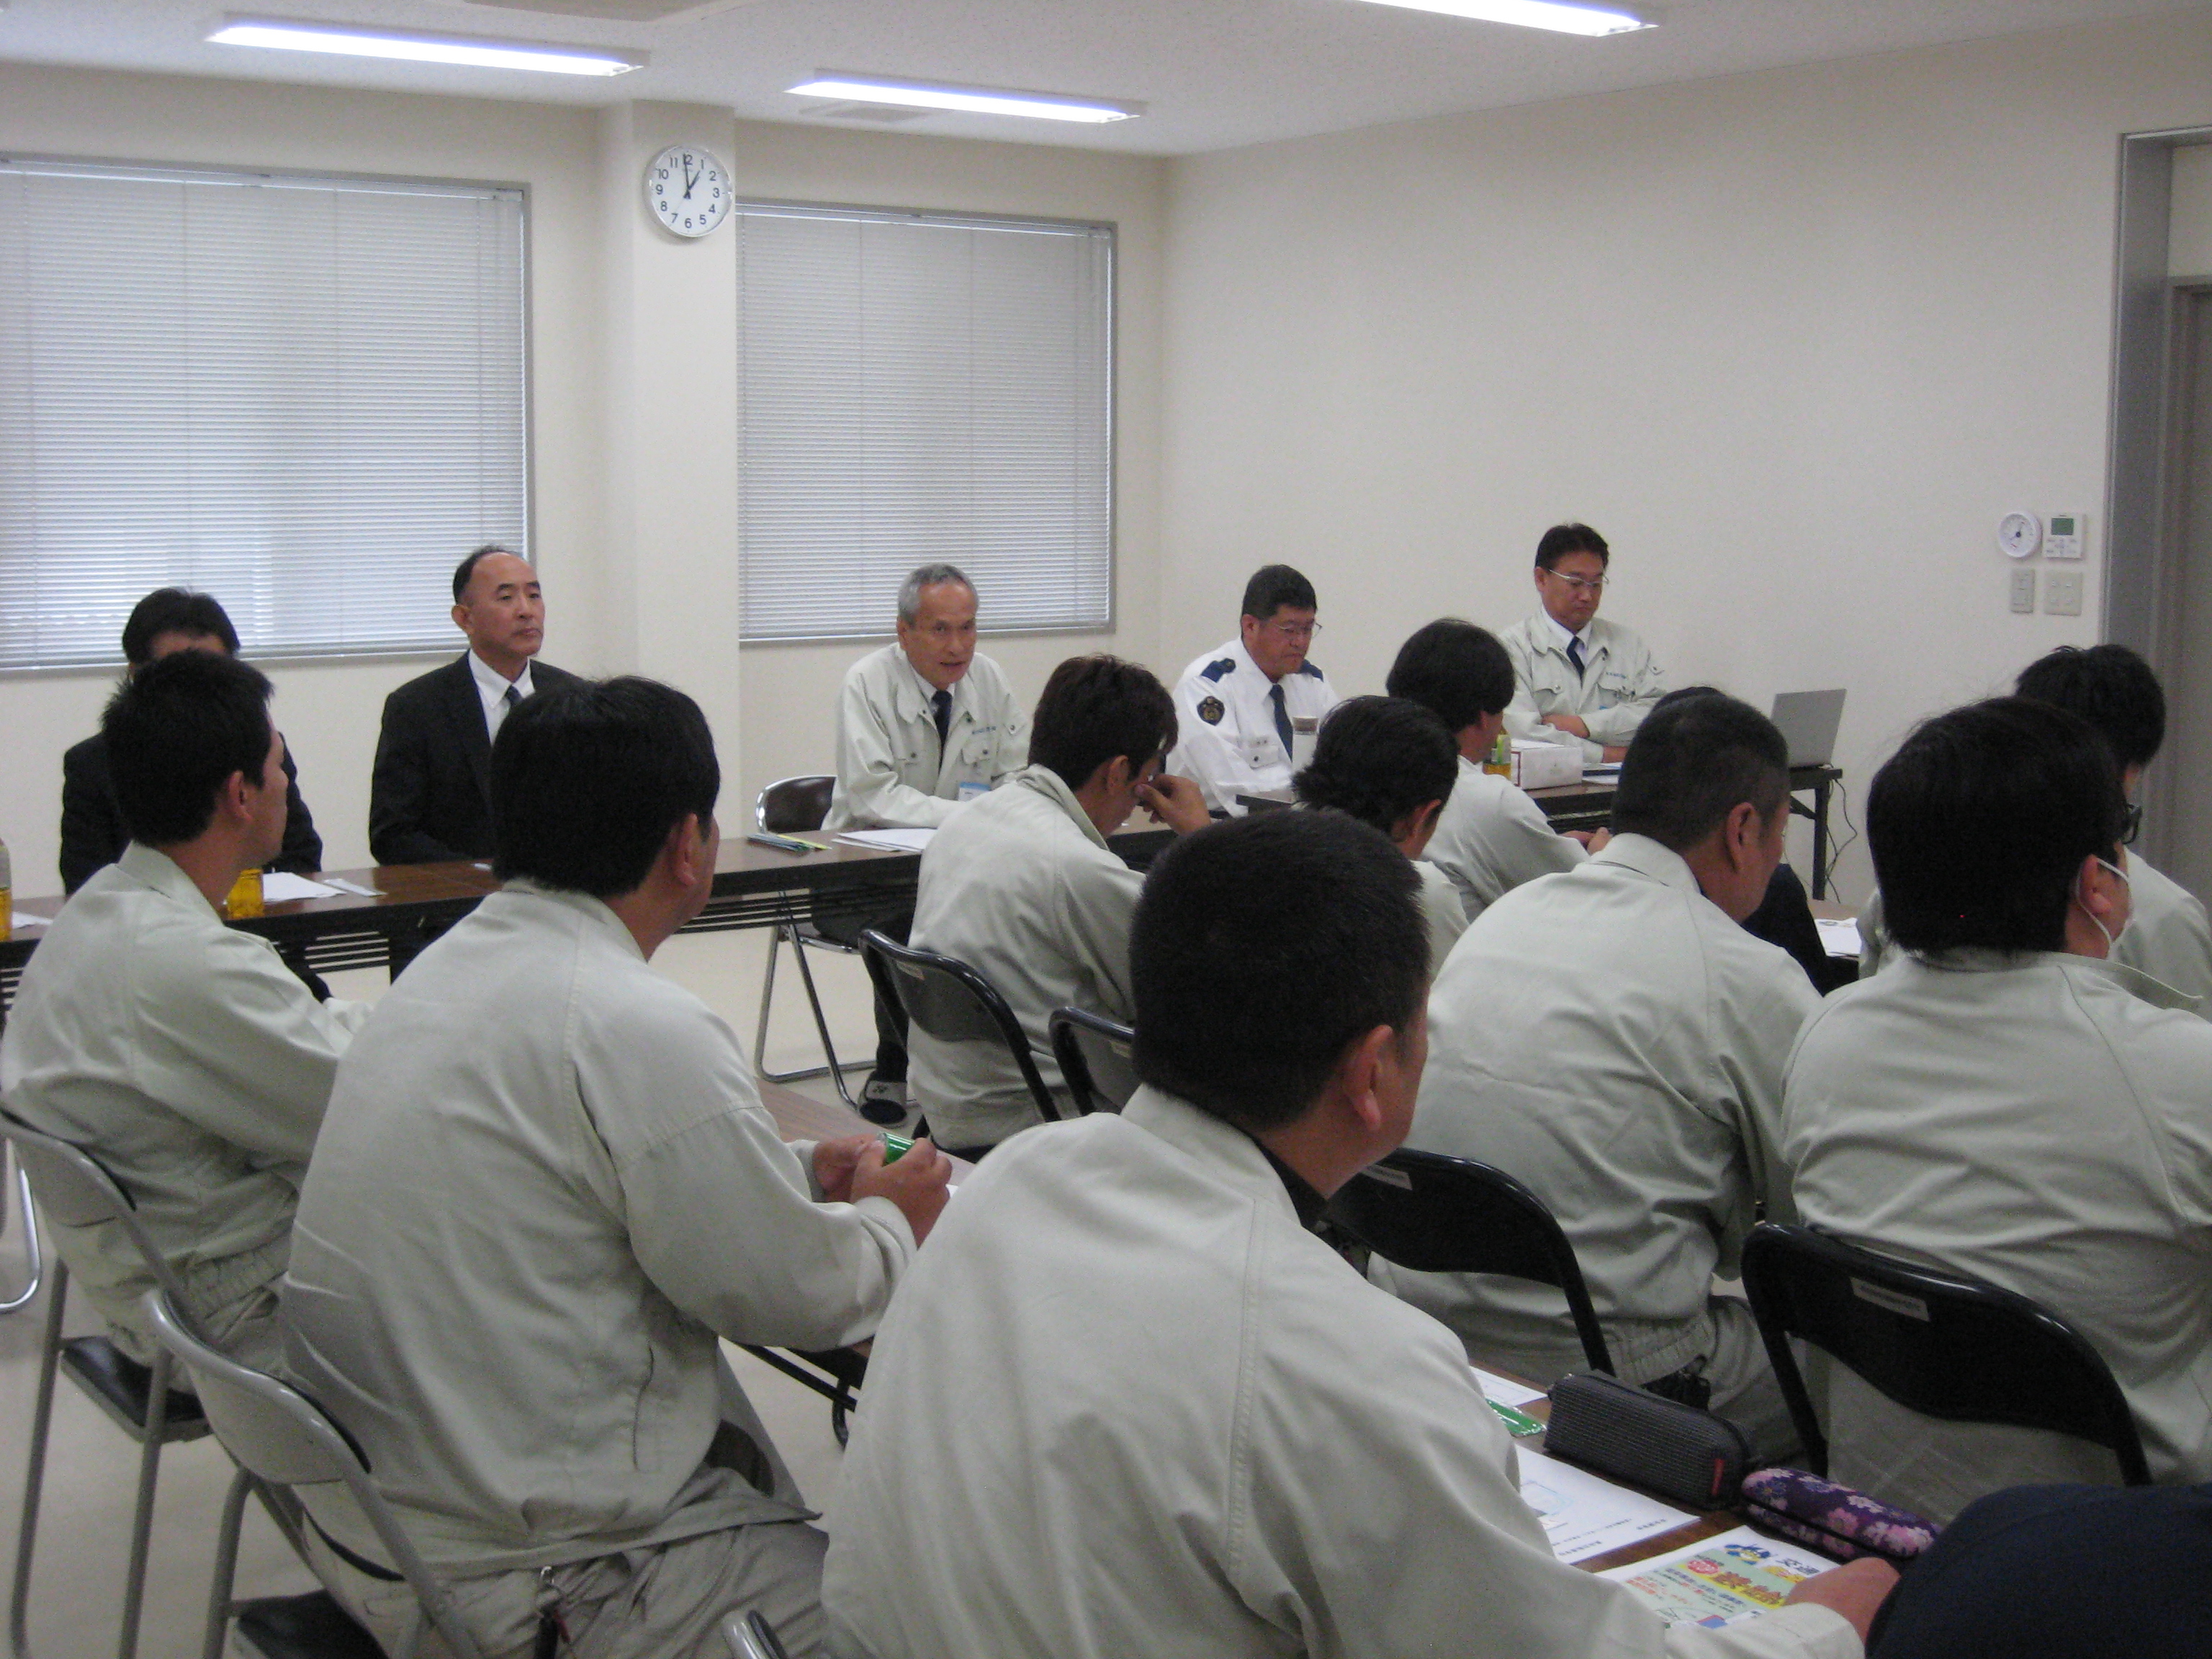 真田自動車学校にて平成29年度 第2回 安全講習会を開催しました 諏訪梱包運輸株式会社